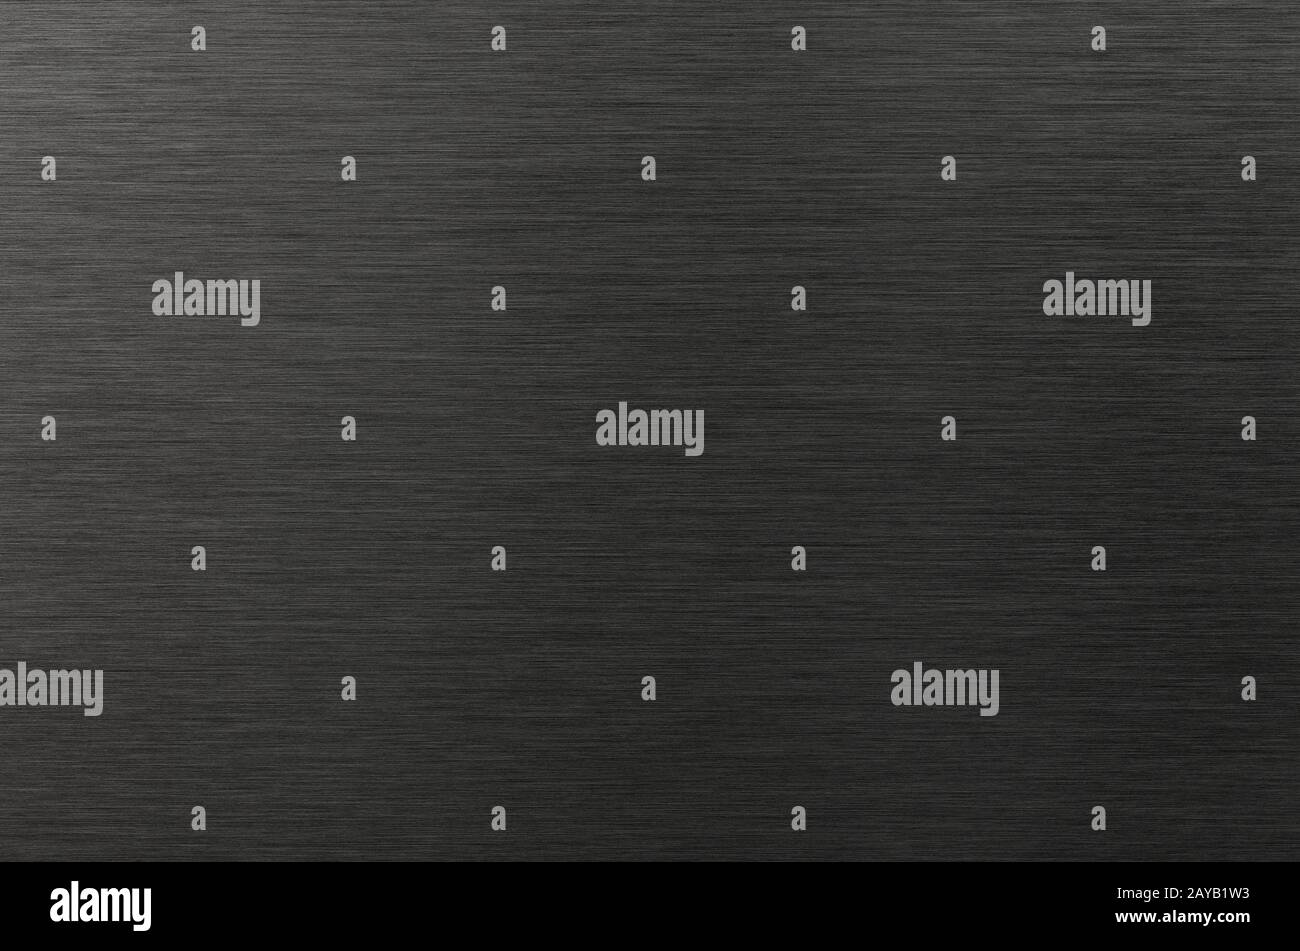 Placa de aluminio negro cepillado Foto de stock